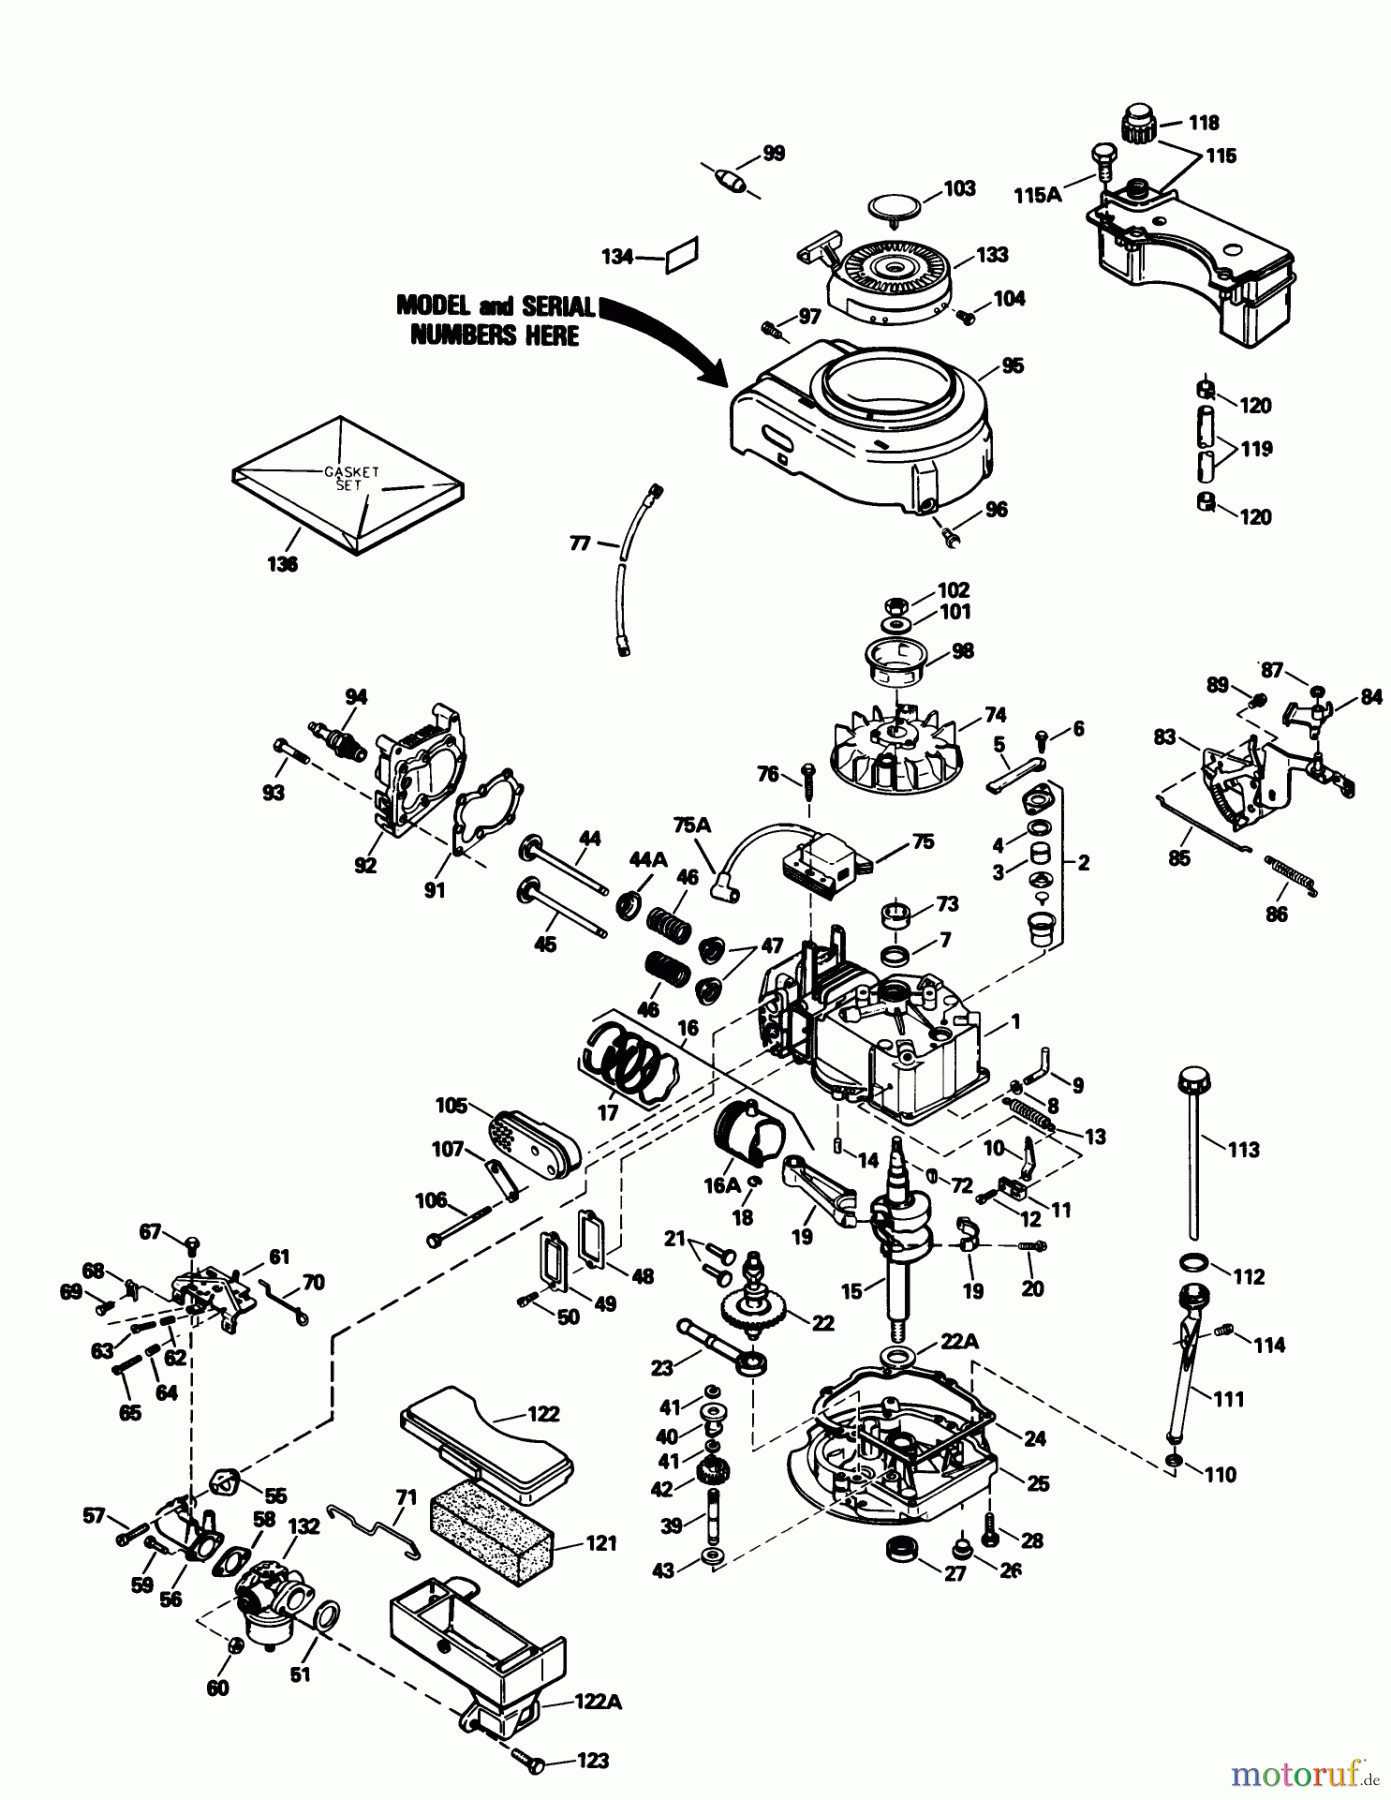  Toro Neu Mowers, Walk-Behind Seite 1 20631 - Toro Lawnmower, 1988 (8000001-8999999) ENGINE TECUMSEH MODEL NO. TVS105-53108F